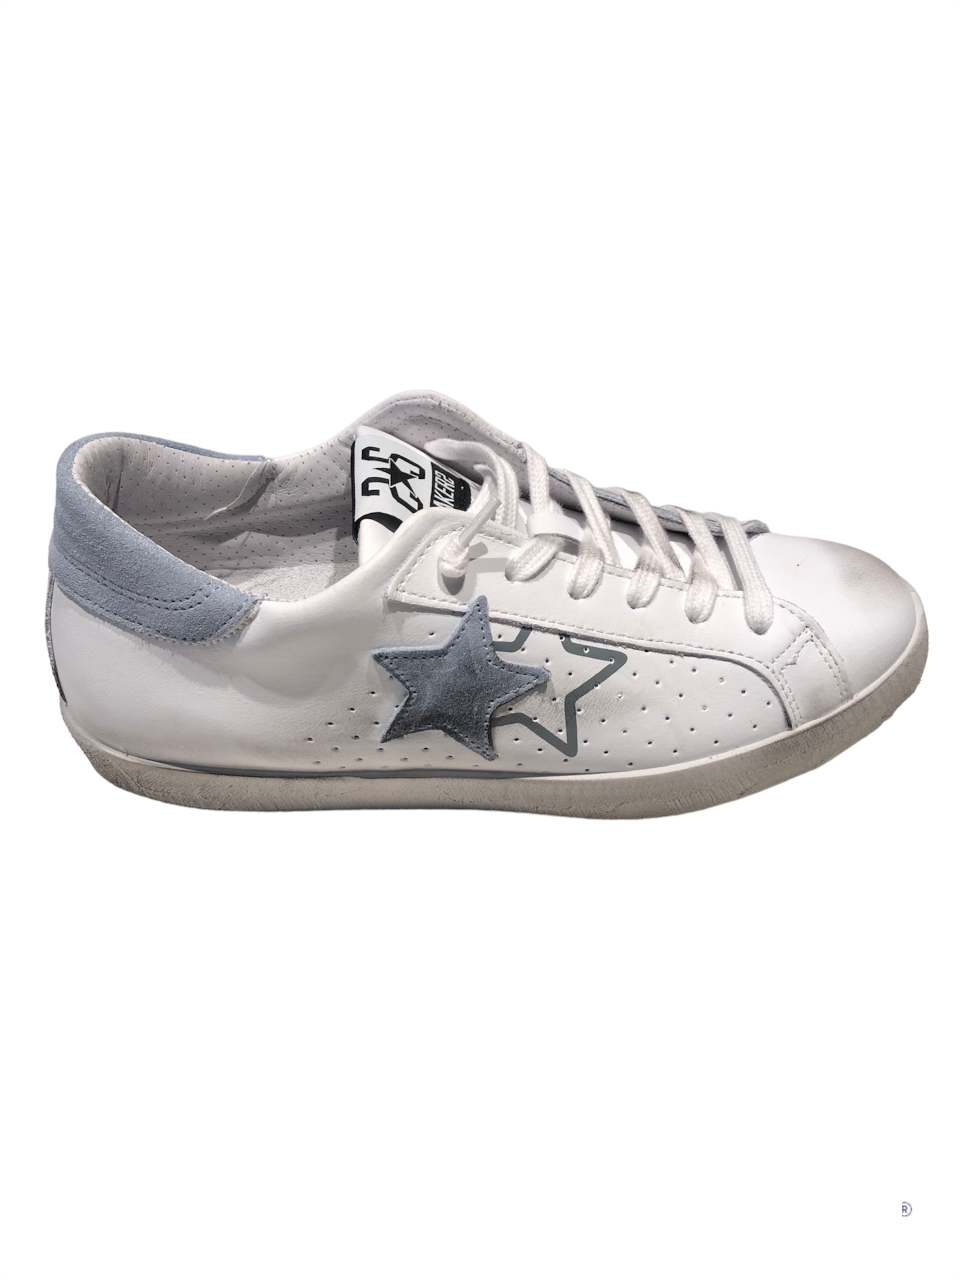 Sneakers in pelle bianca con dettagli in suede grigio